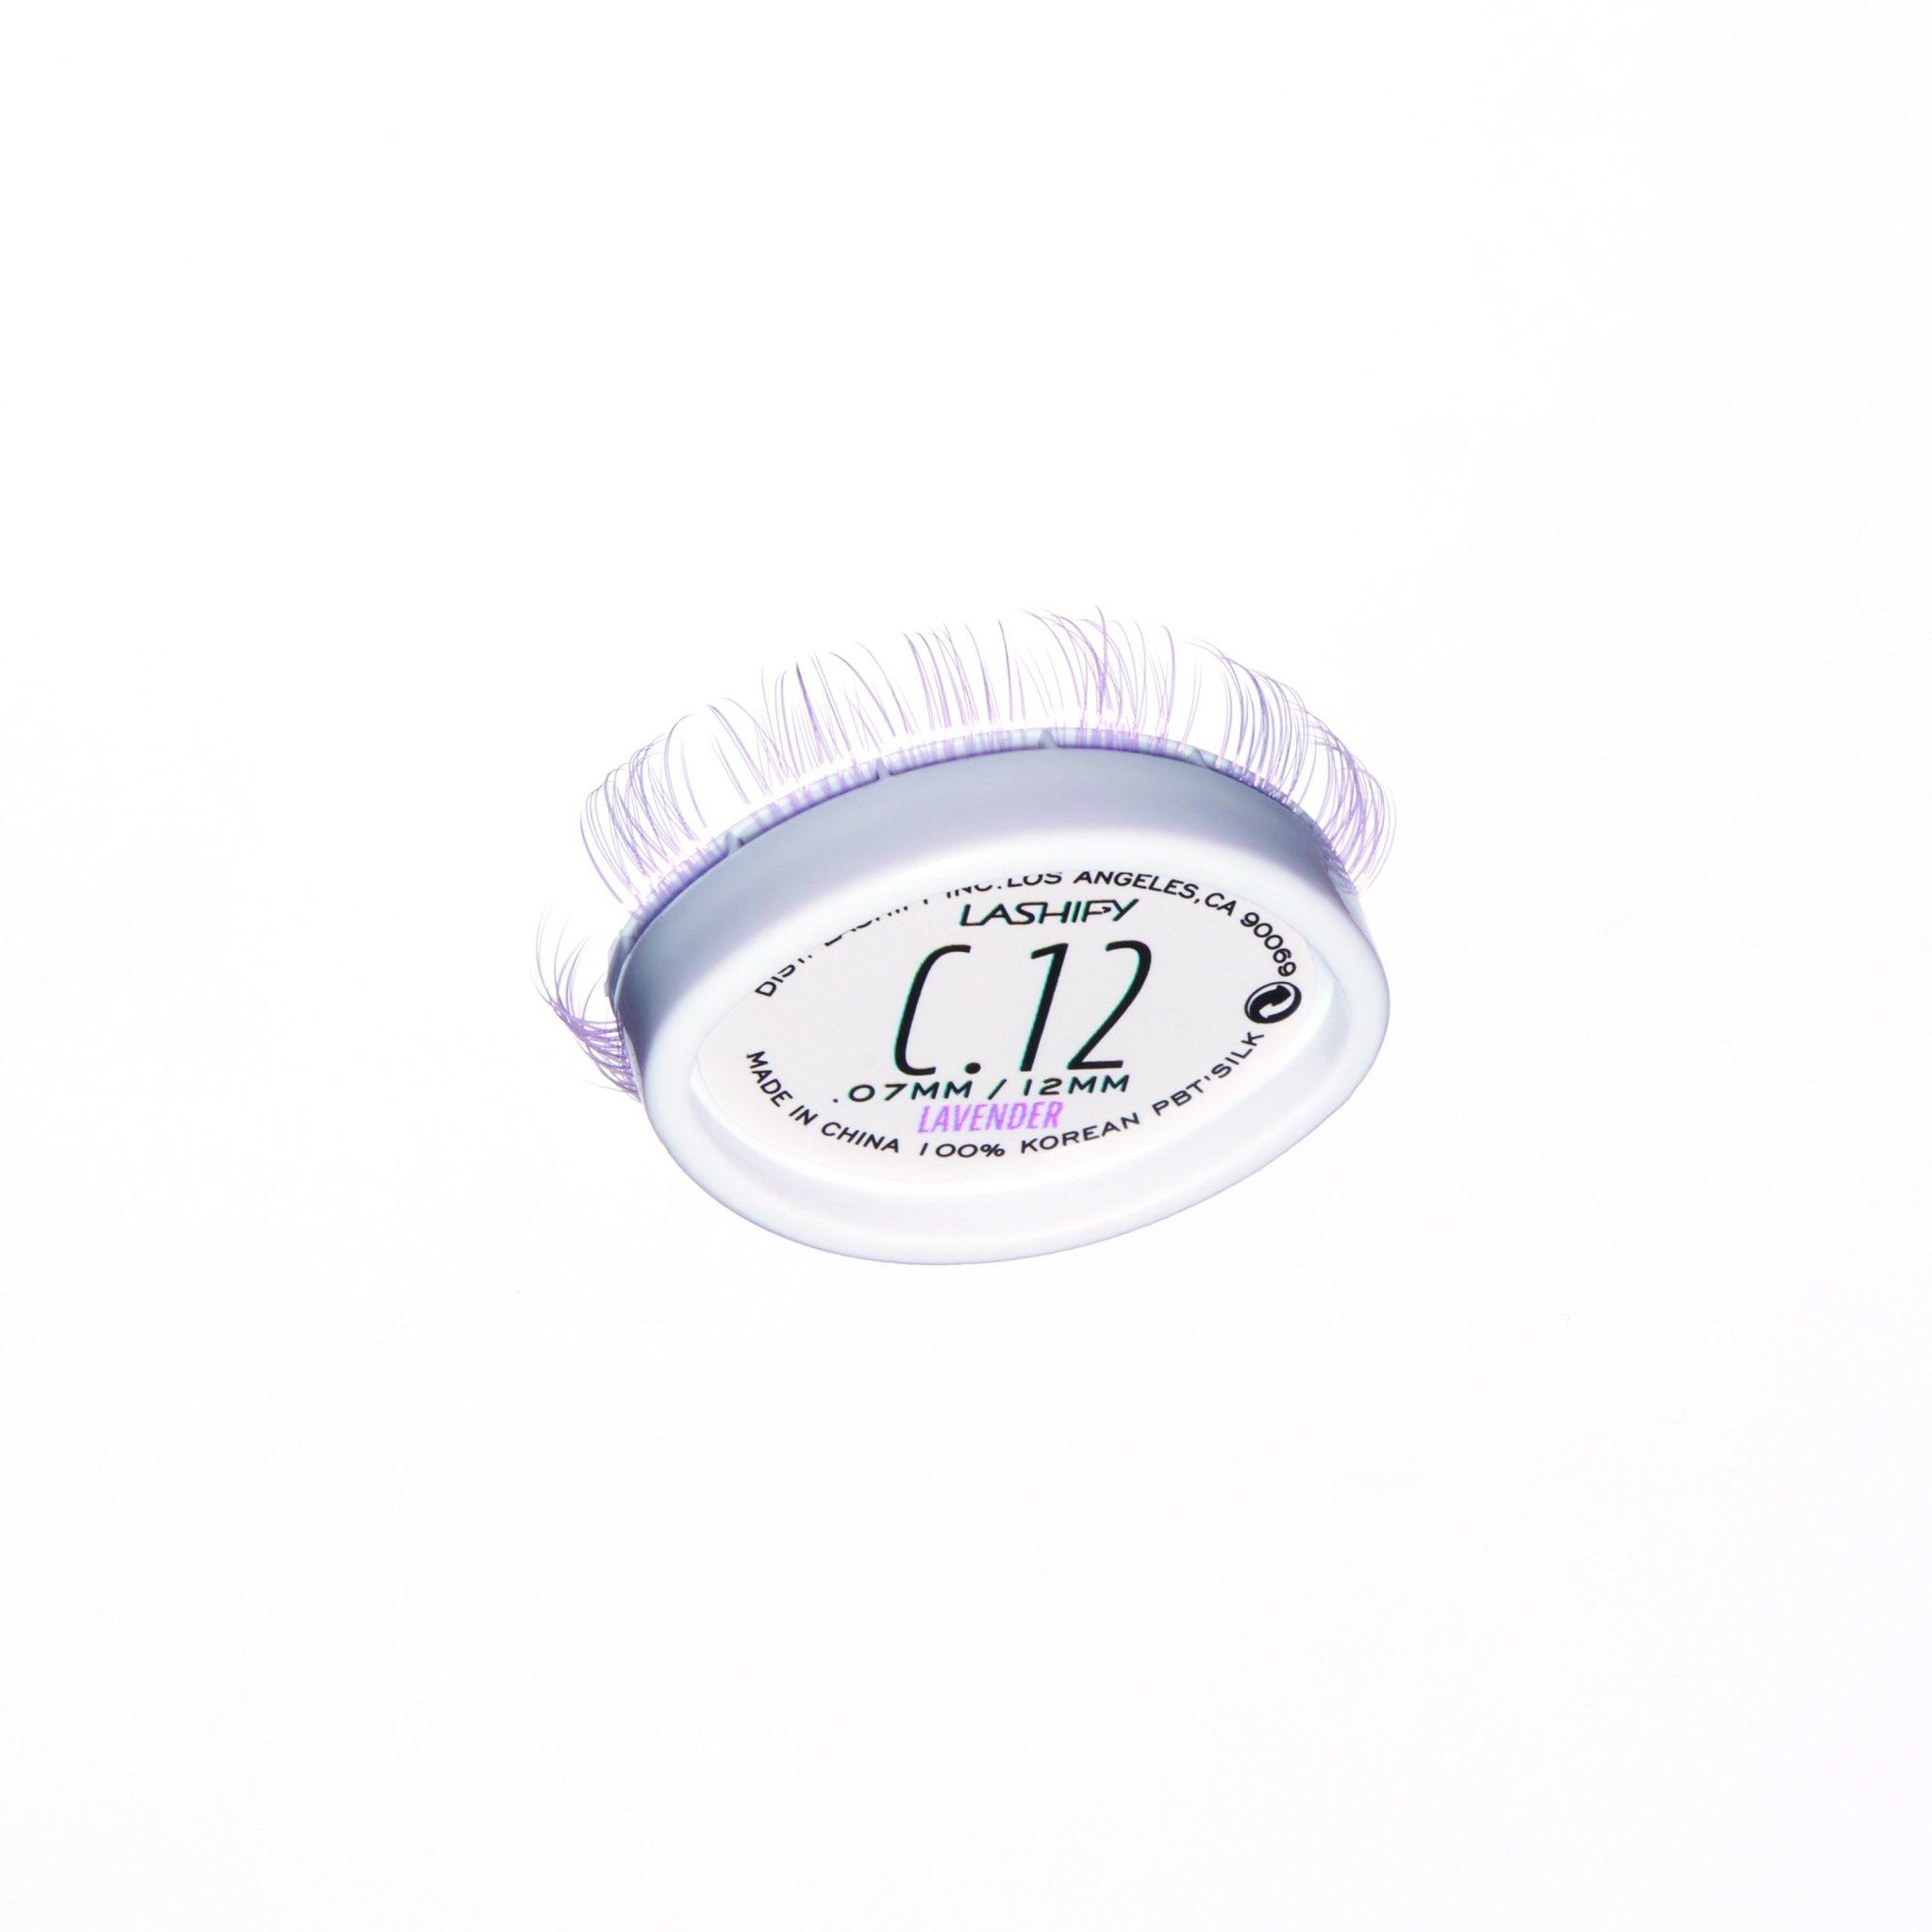 Prismatics Gossamer® Lavender Lashes Gossamer Lash Sets Lashify 